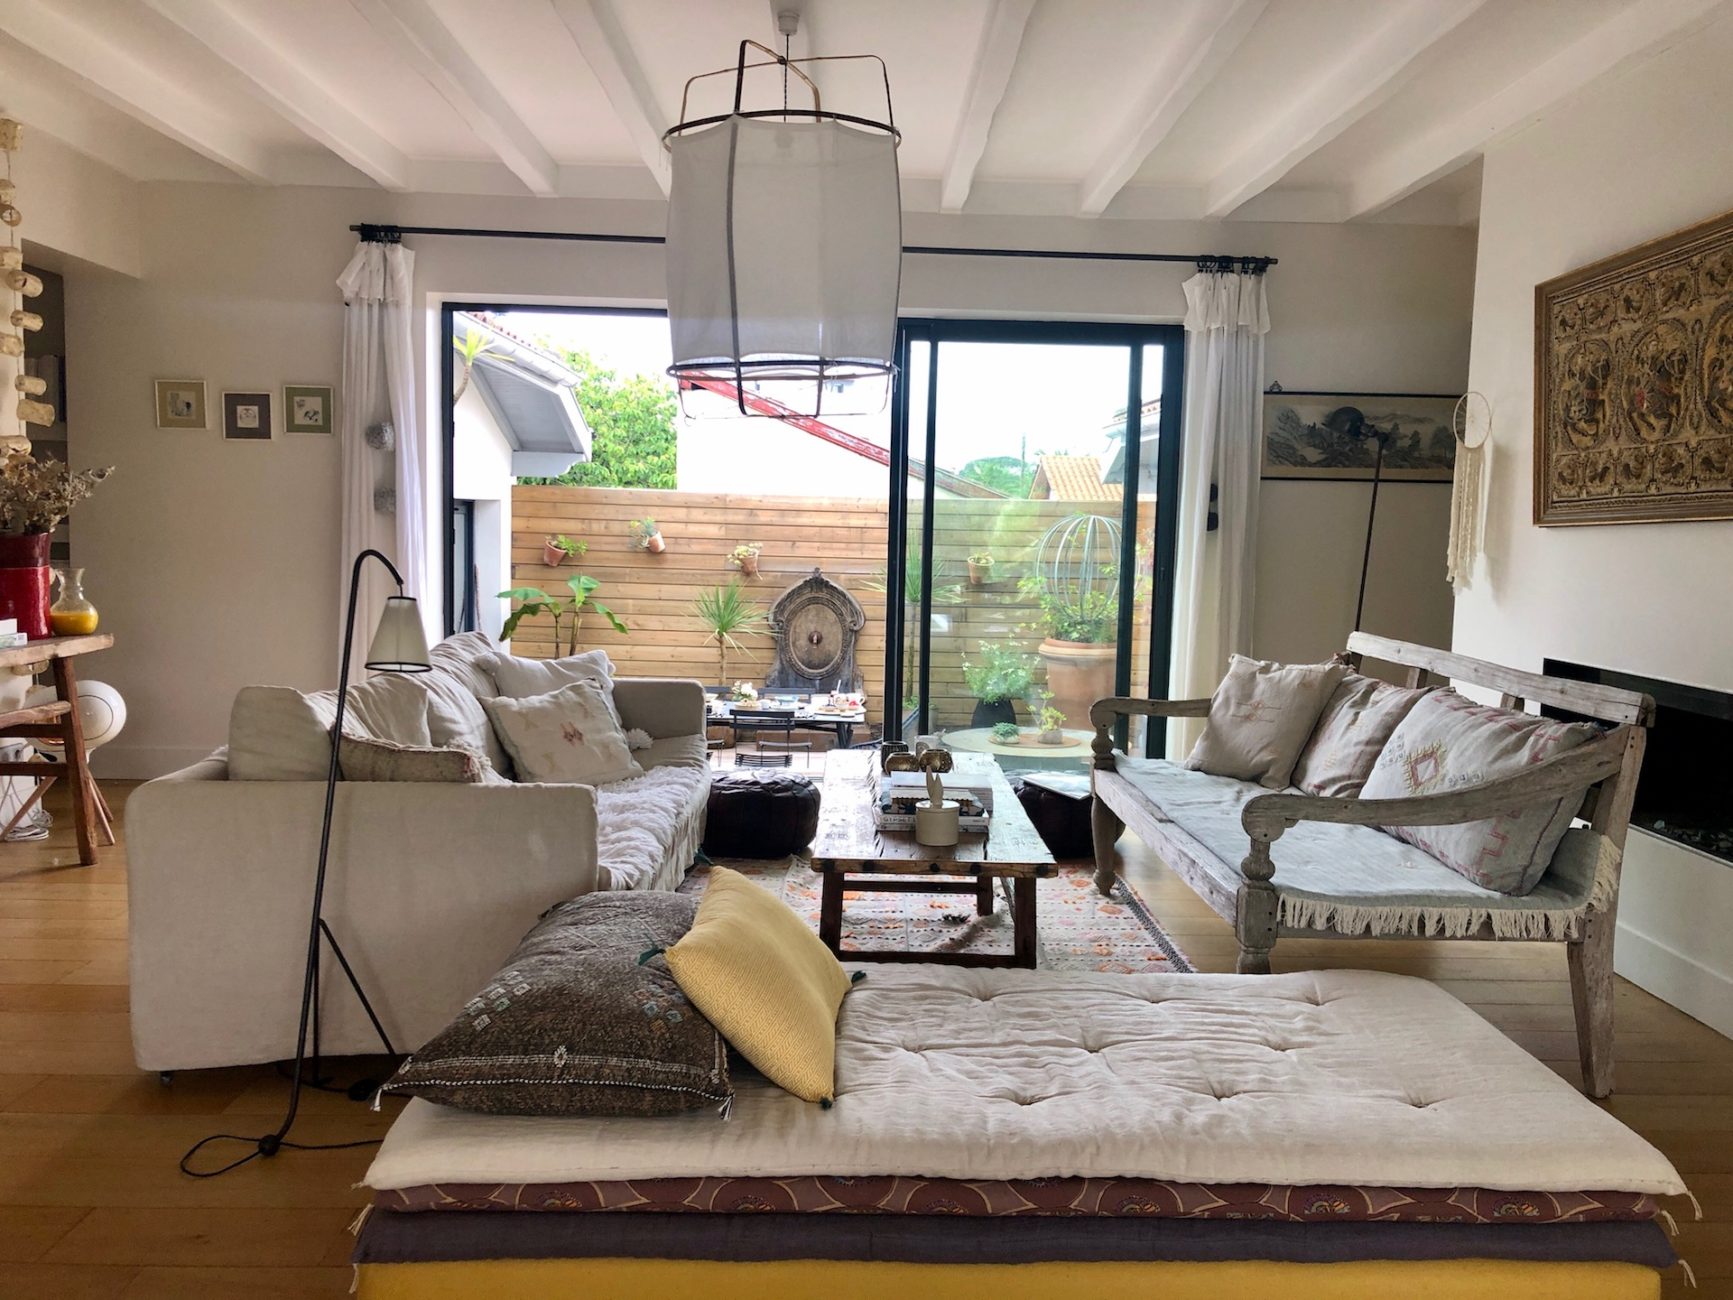 Maison Lekua, salon ouvert sur terrasse patio, havre de paix pour familles en vacances à Anglet, Pays Basque, SimpleLuxe